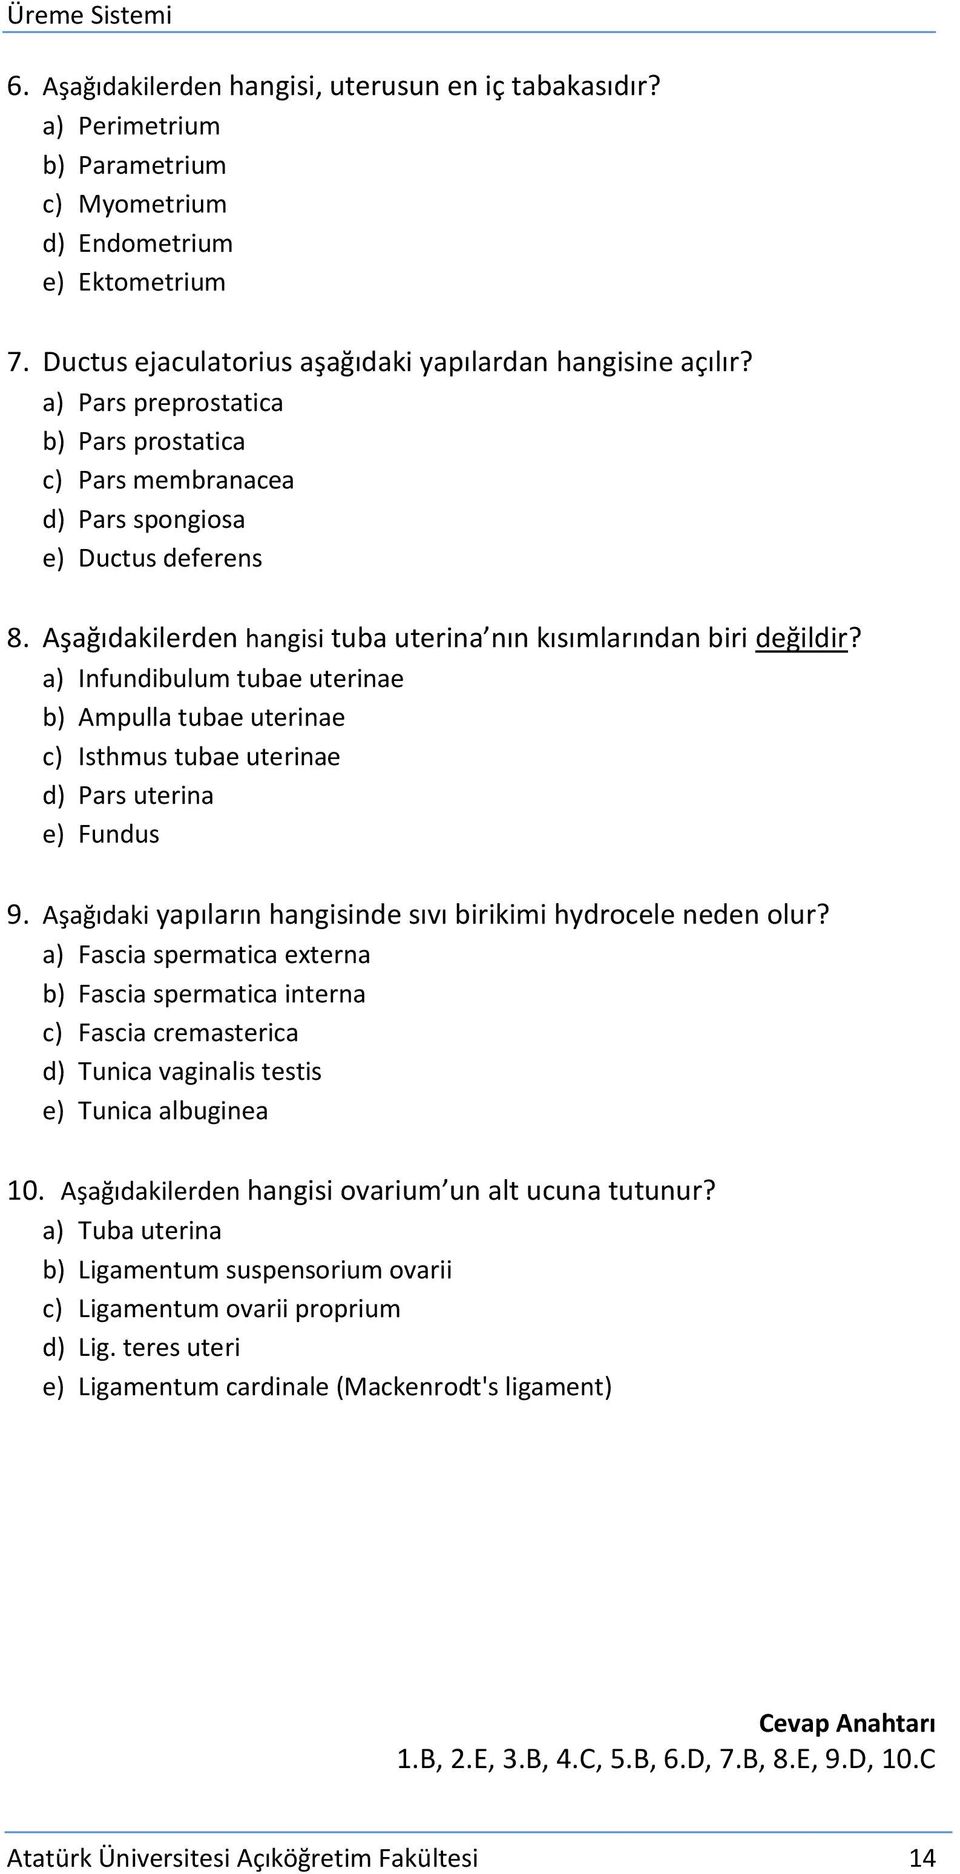 a) Infundibulum tubae uterinae b) Ampulla tubae uterinae c) Isthmus tubae uterinae d) Pars uterina e) Fundus 9. Aşağıdaki yapıların hangisinde sıvı birikimi hydrocele neden olur?